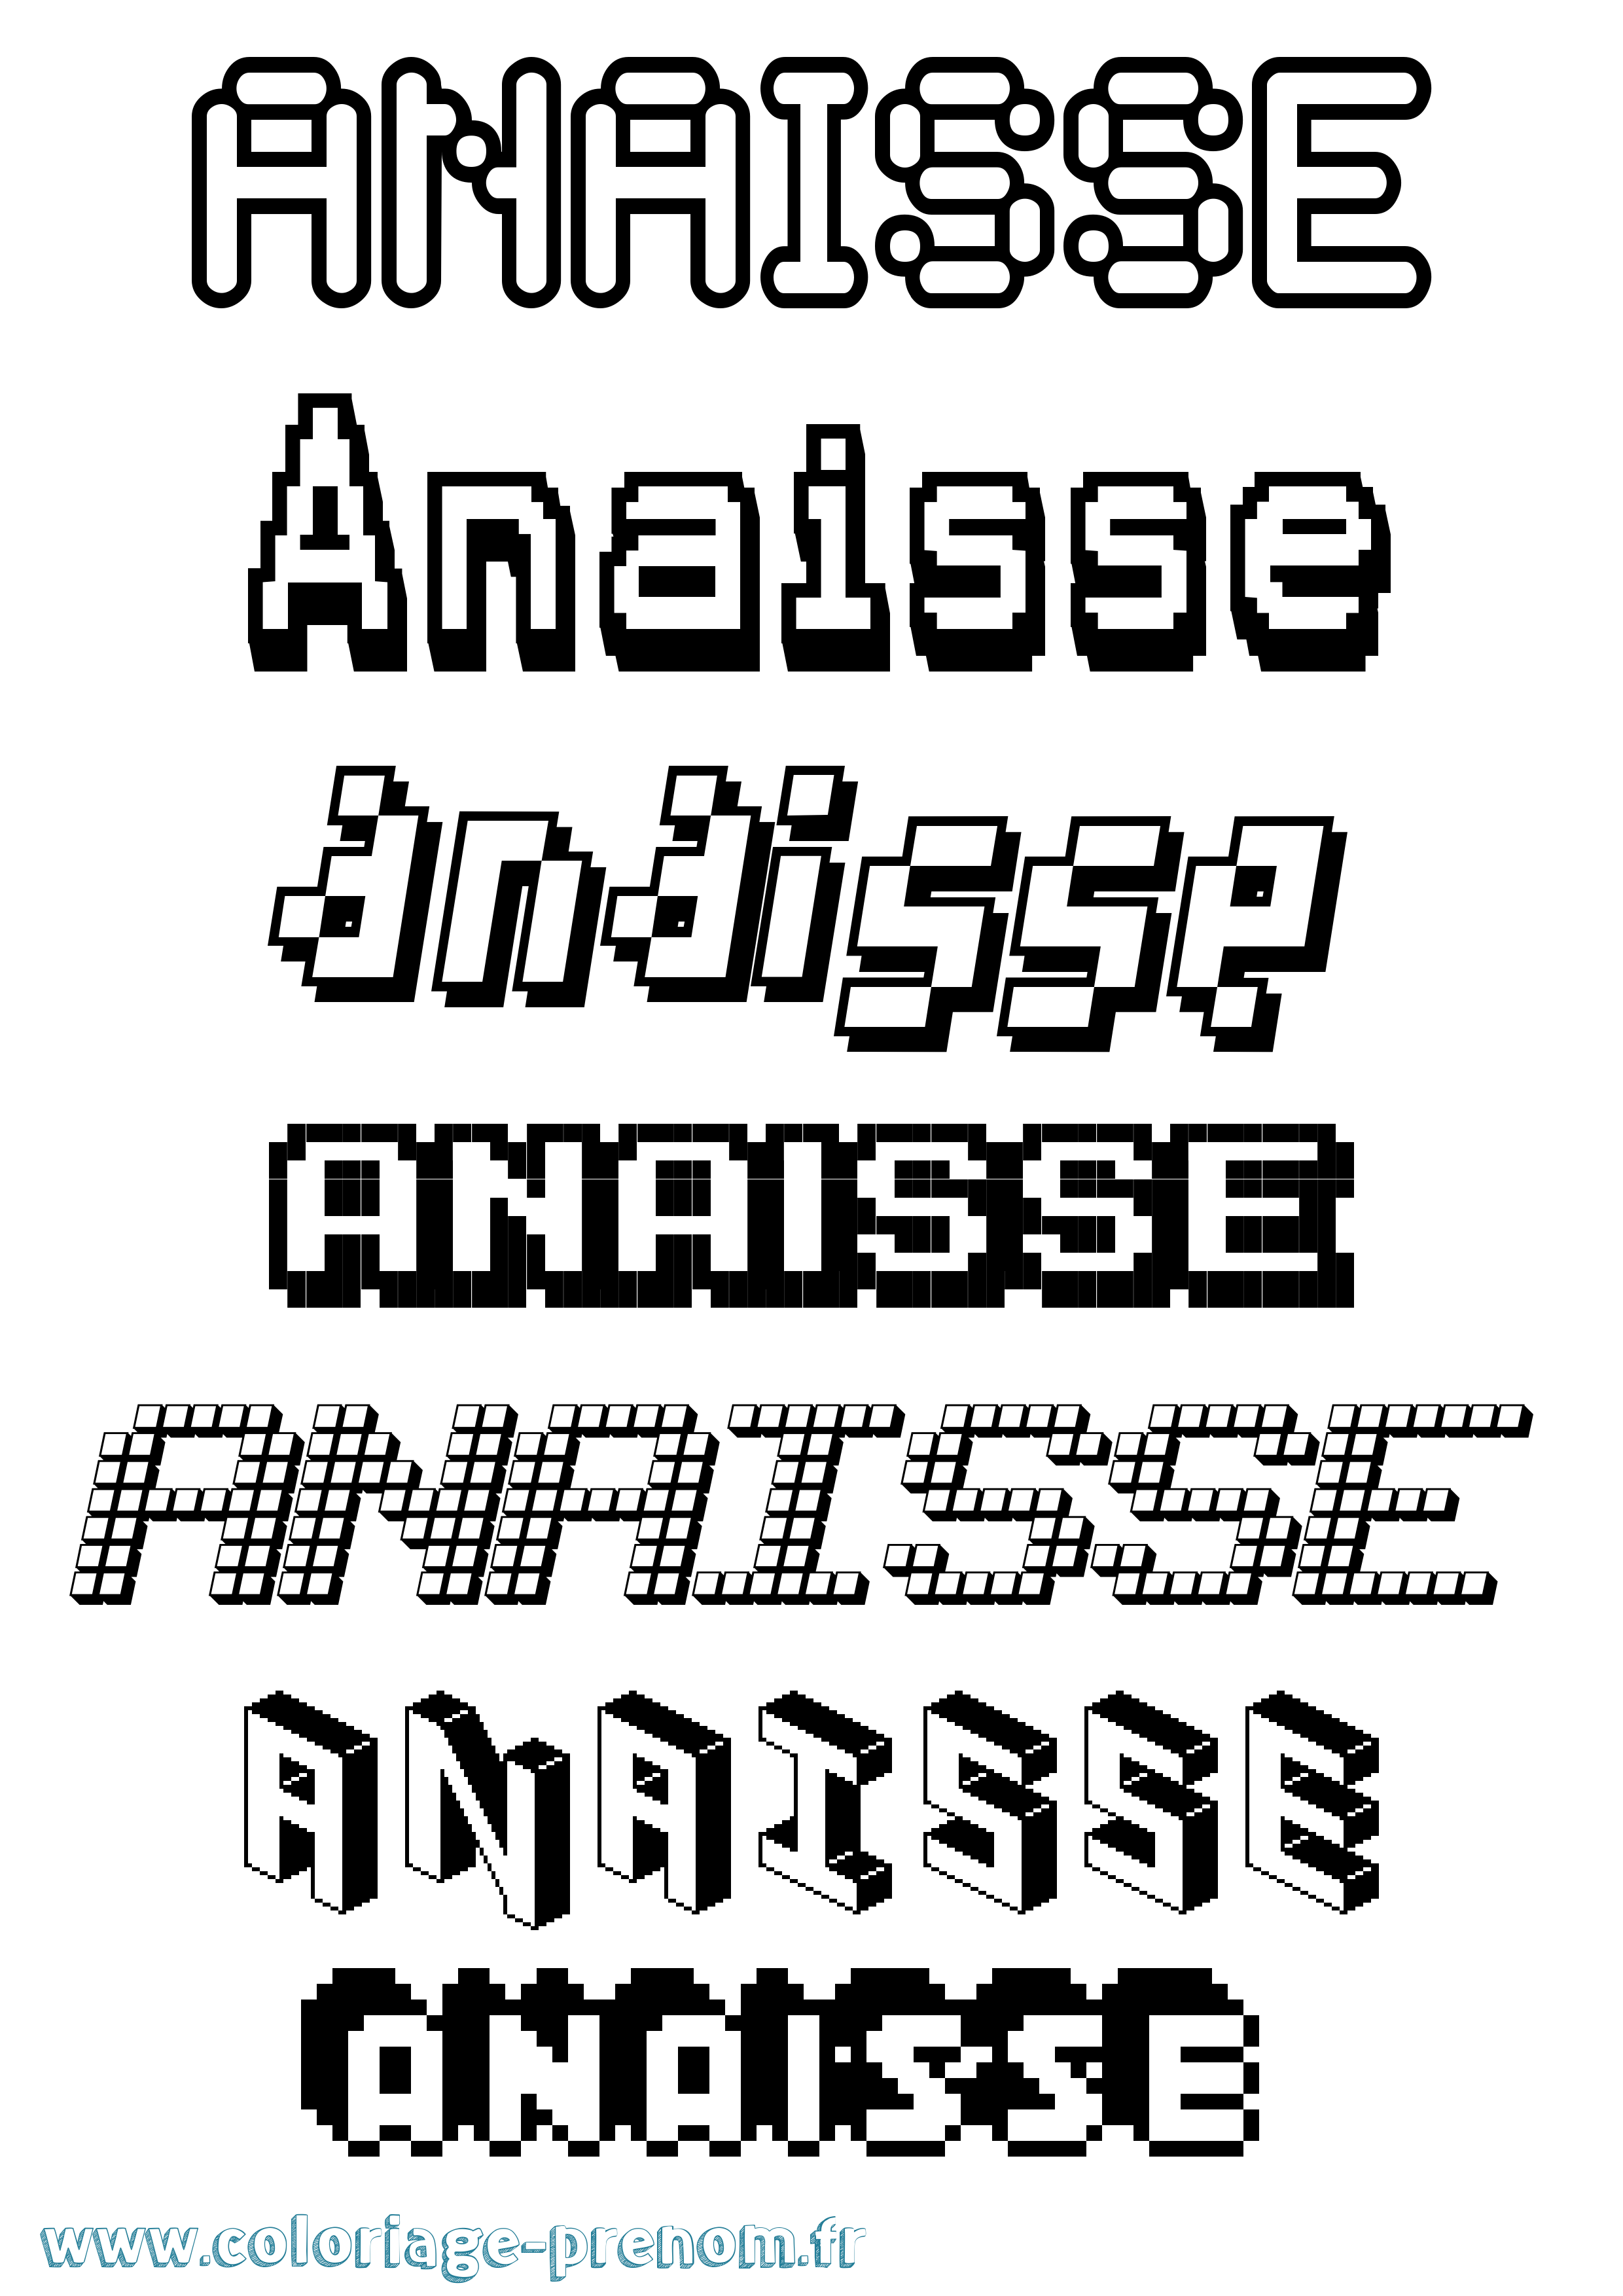 Coloriage prénom Anaisse Pixel